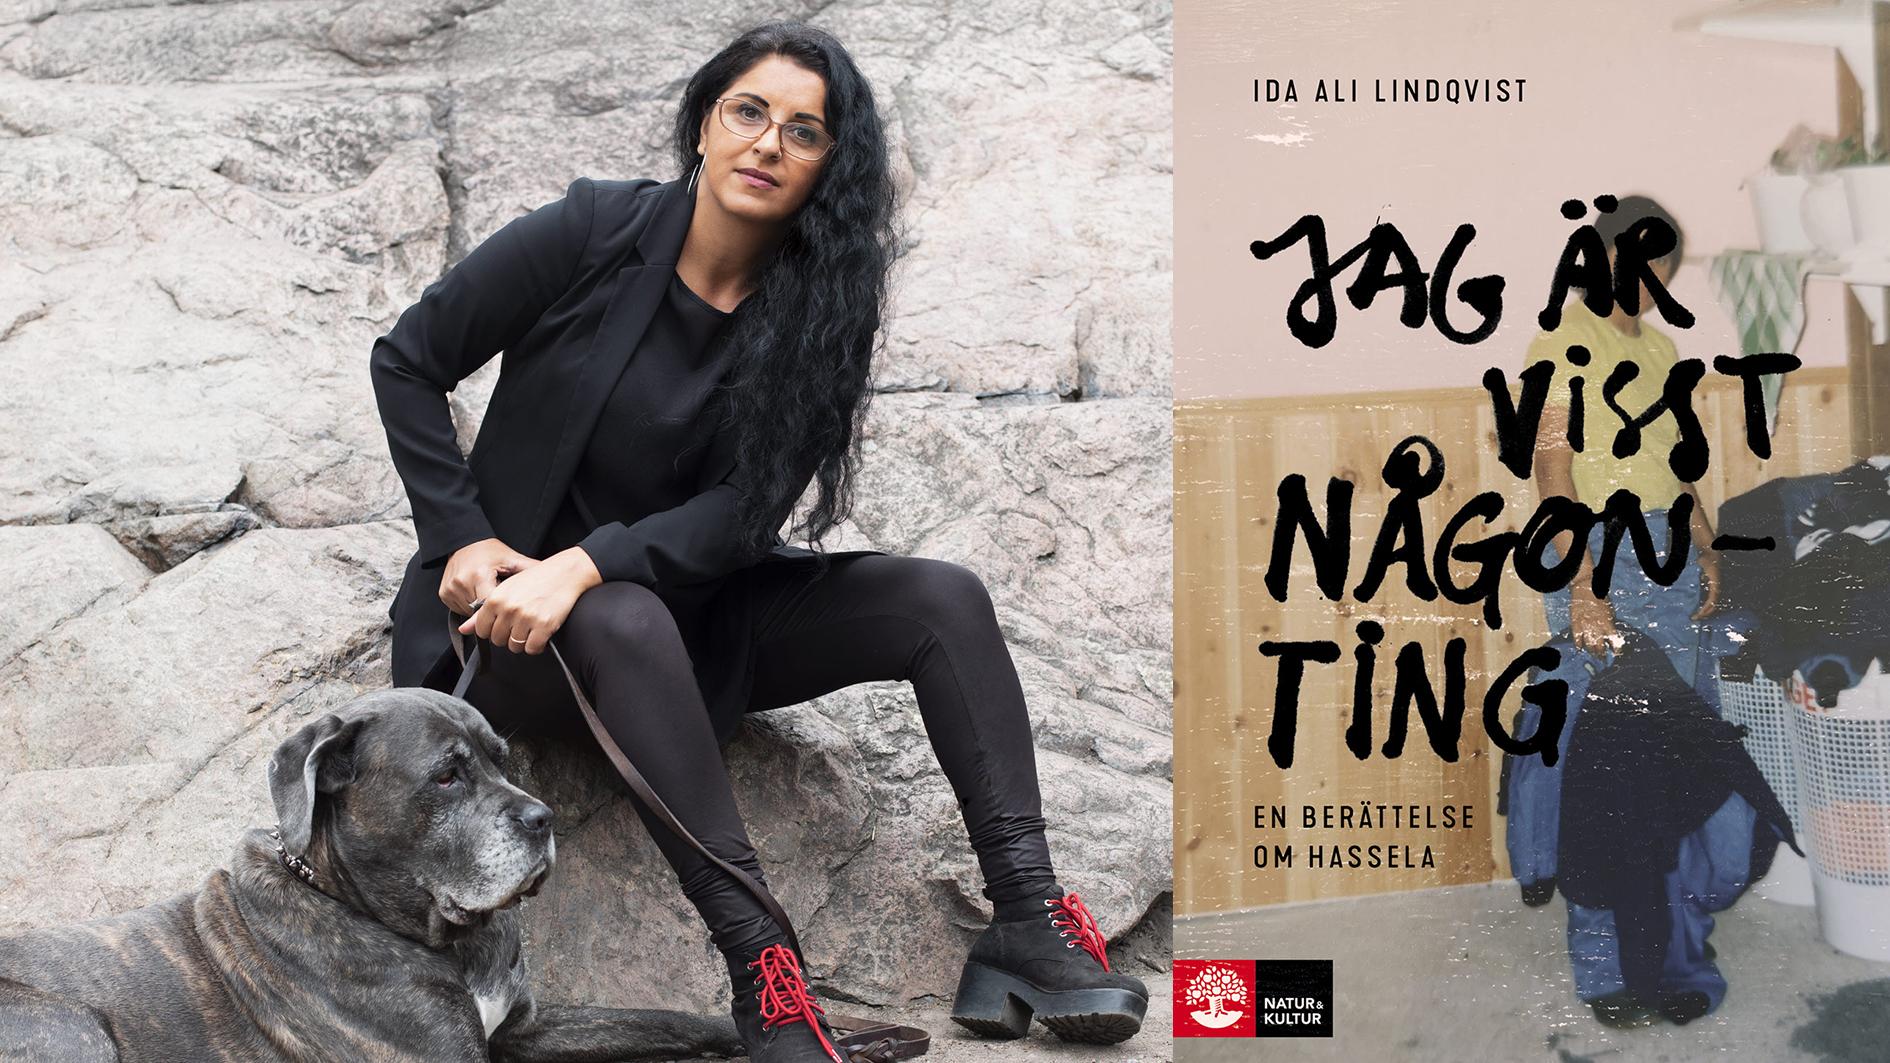 Ida Ali Lindqvist är journalist, samhällsdebattör och samtalsterapeut. ”Jag är visst någonting – en berättelse om Hassela” är hennes första bok.